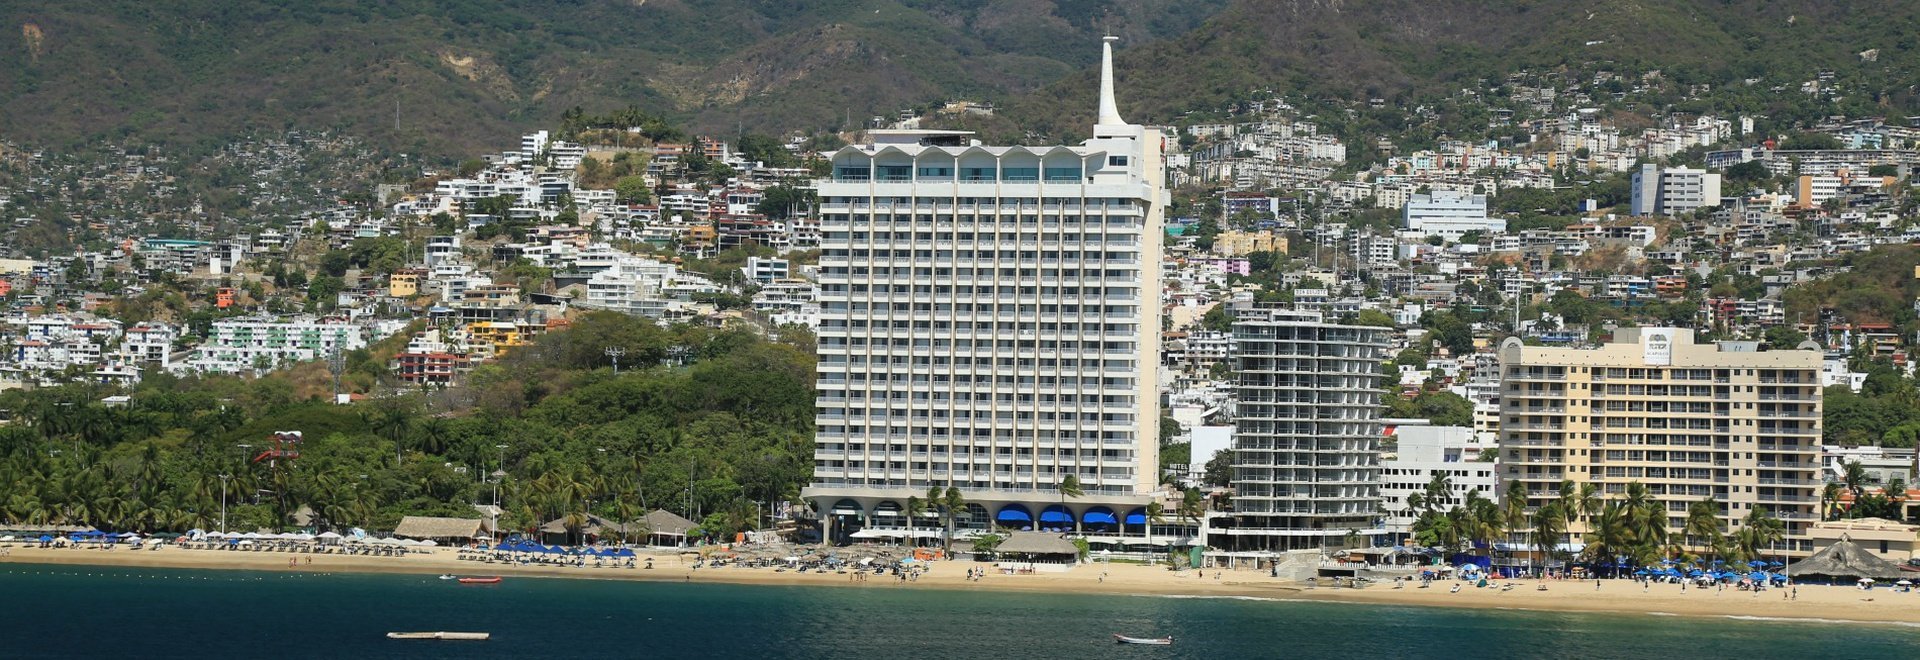 Hôtel Krystal Beach Acapulco -  